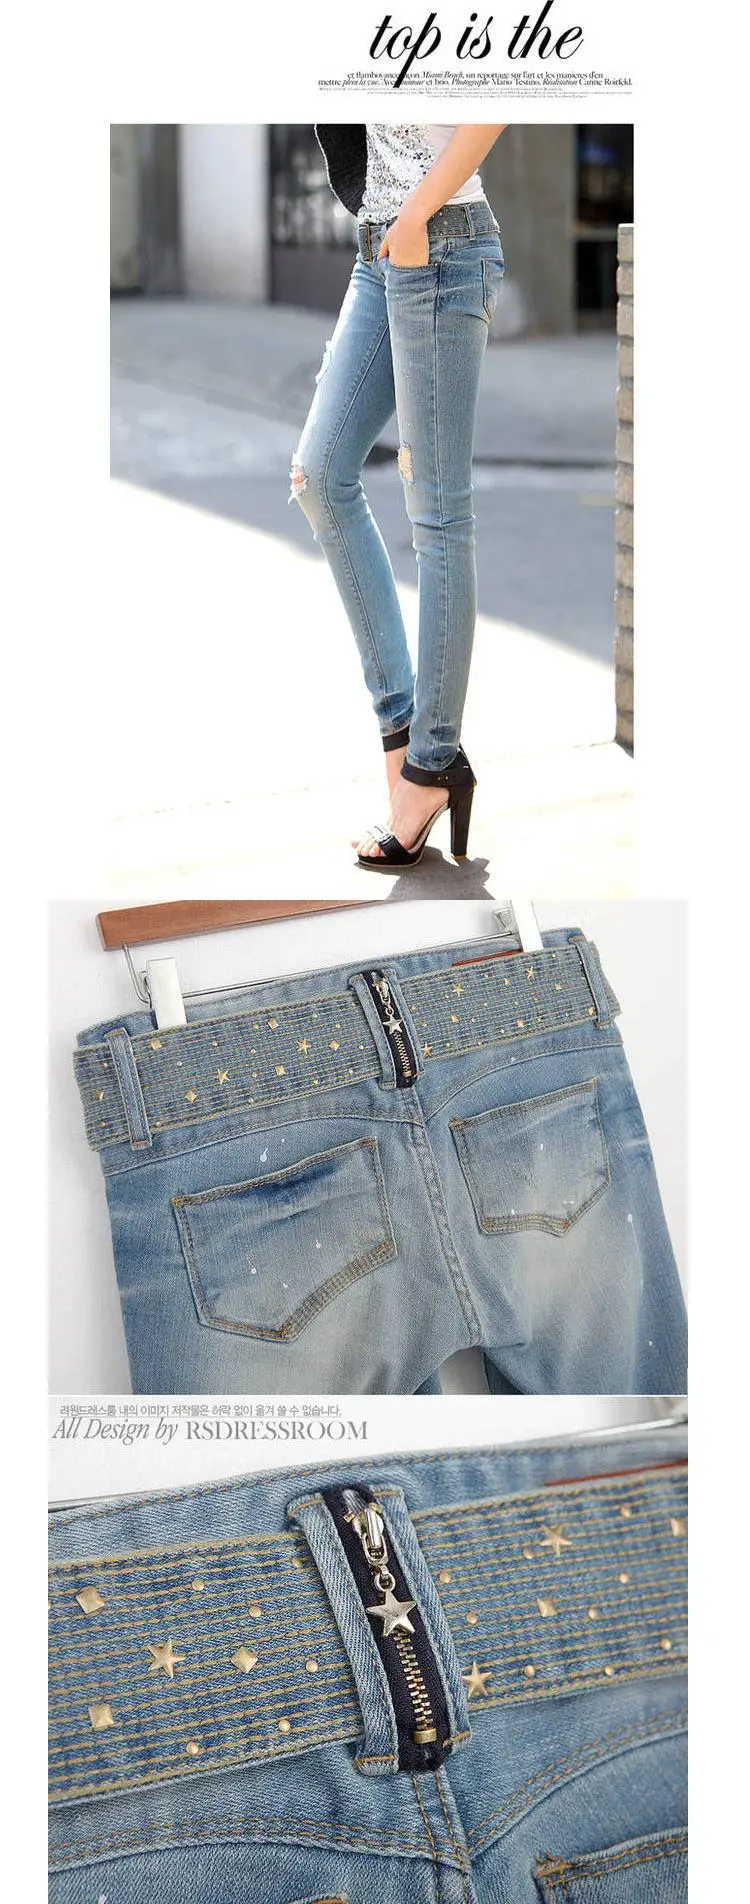 Лидер продаж Новое поступление модные женские джинсы джинсы с дыркой персональные карандаш для женщин брюки прямые брюки nz0477